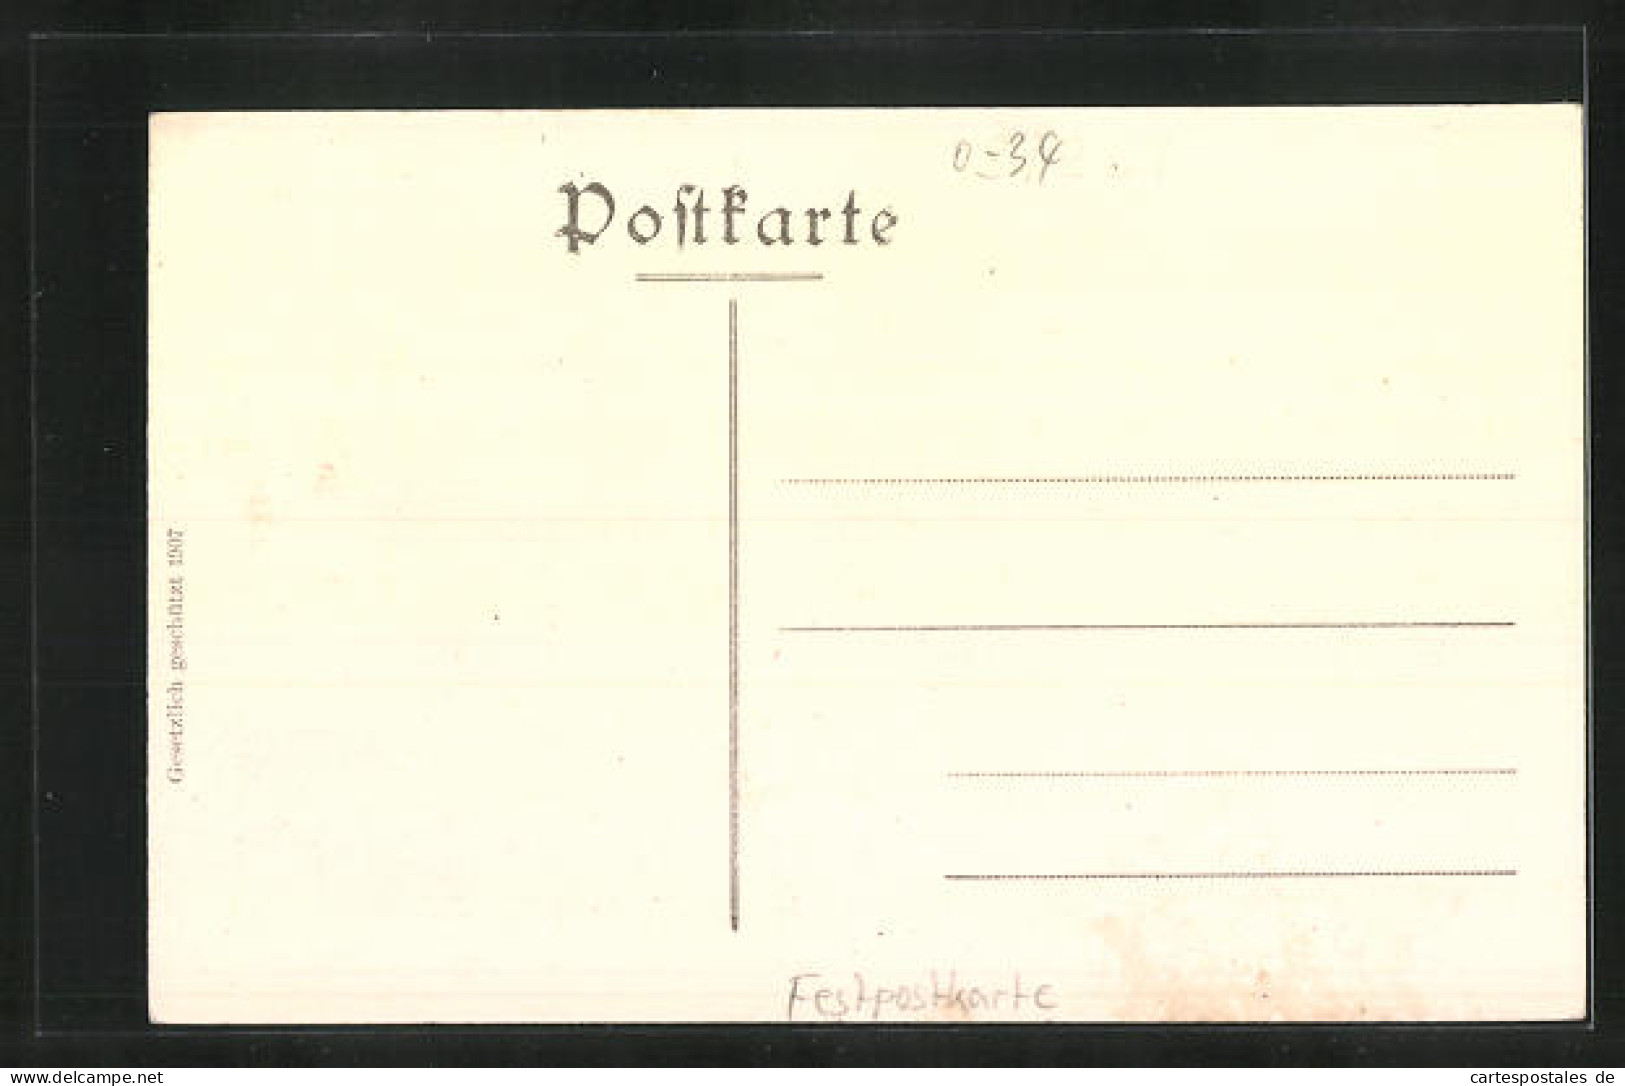 Künstler-AK Zerbst, Festpostkarte 900 Jähriges Jubiläum 1907, Fürst Karl Wilhelm Beim Bau Der Trinitatiskirche  - Zerbst